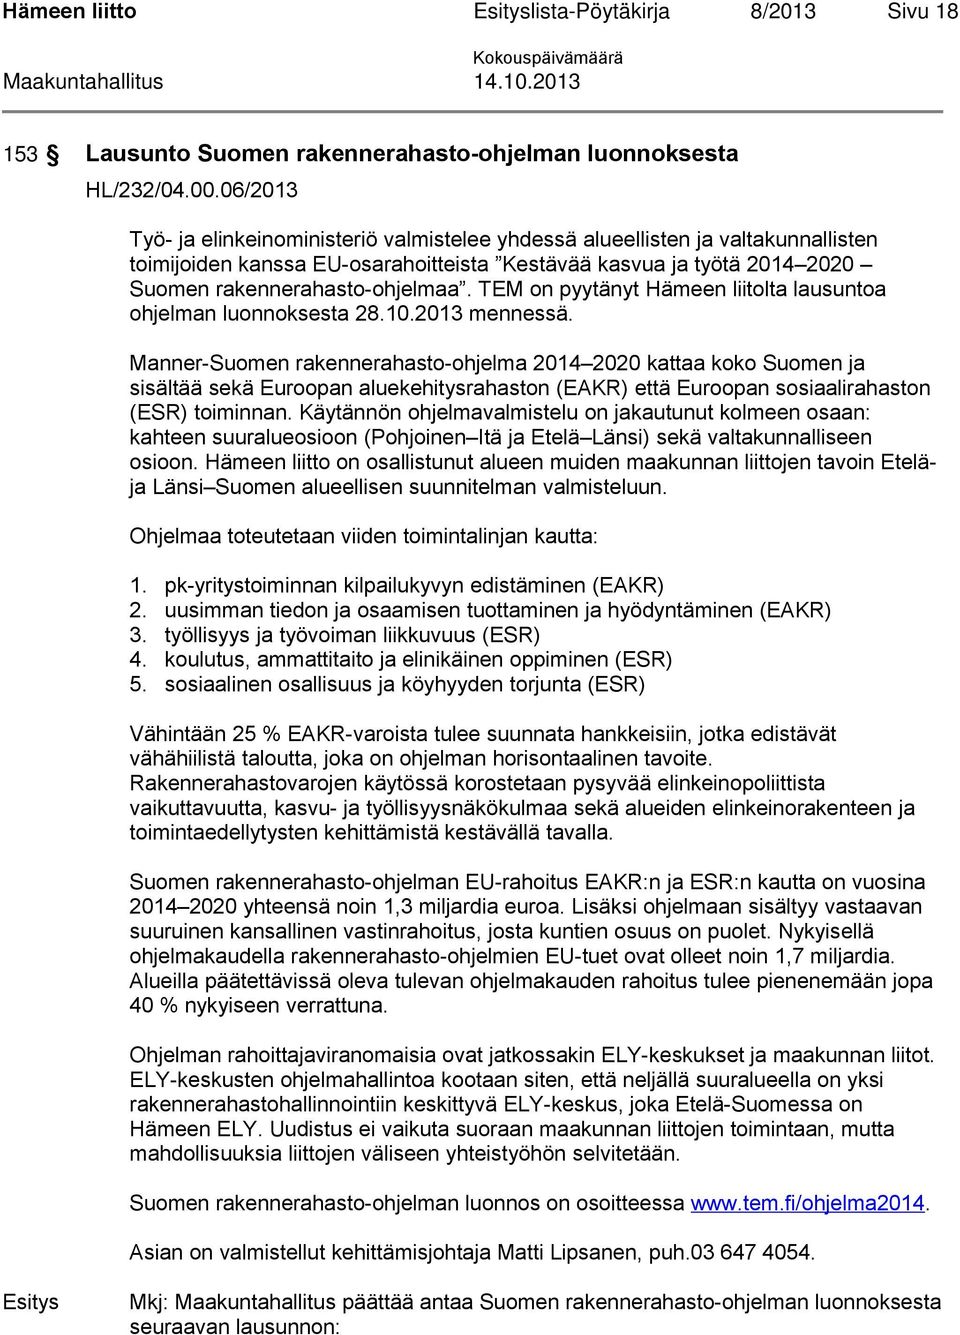 TEM on pyytänyt Hämeen liitolta lausuntoa ohjelman luonnoksesta 28.10.2013 mennessä.